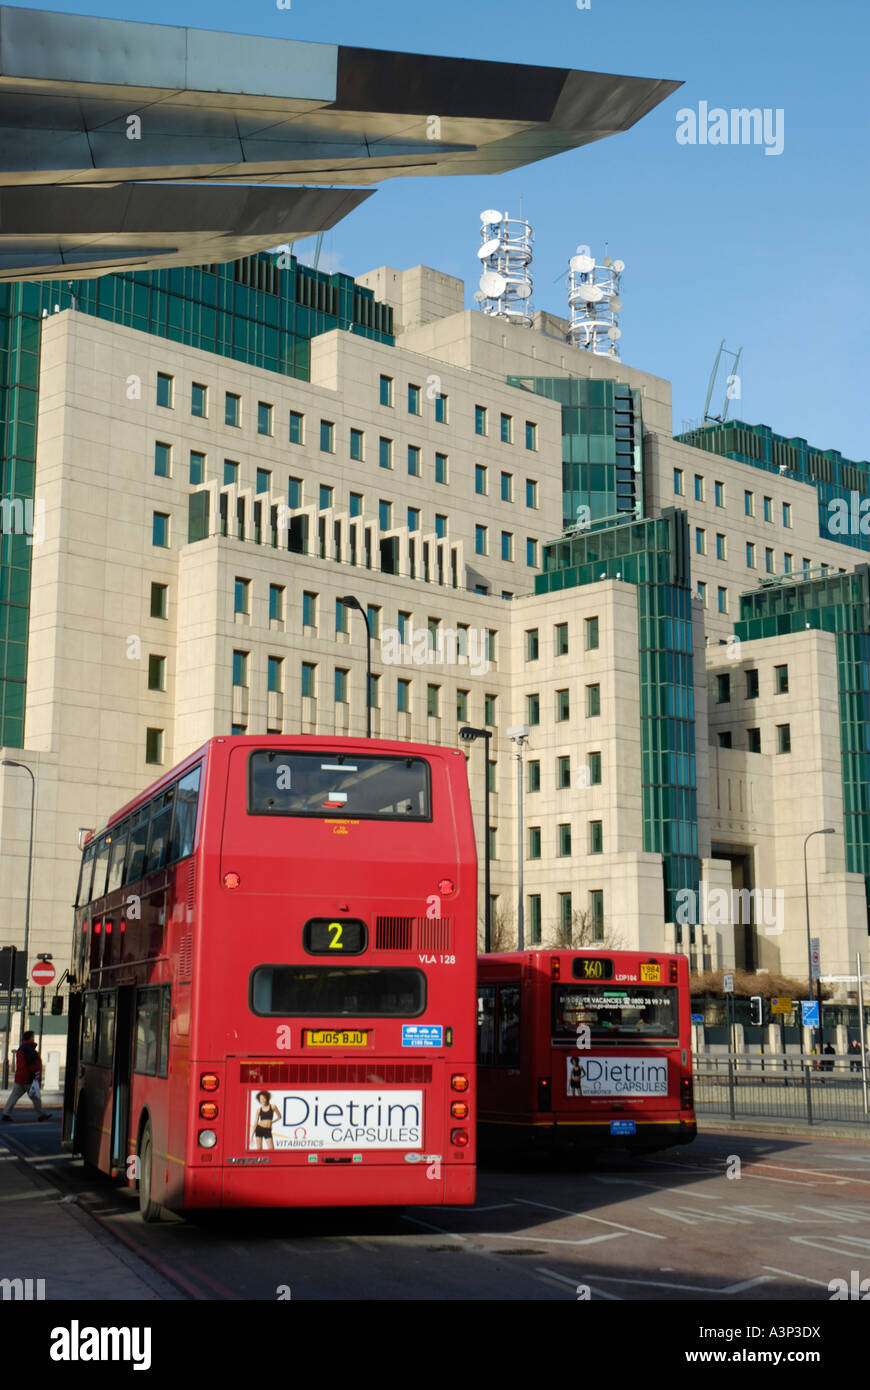 Vue sur le MI6, service du renseignement à l'édifice du siège social de Vauxhall station de bus à l'avant-plan Vauxhall Londres Angleterre Banque D'Images